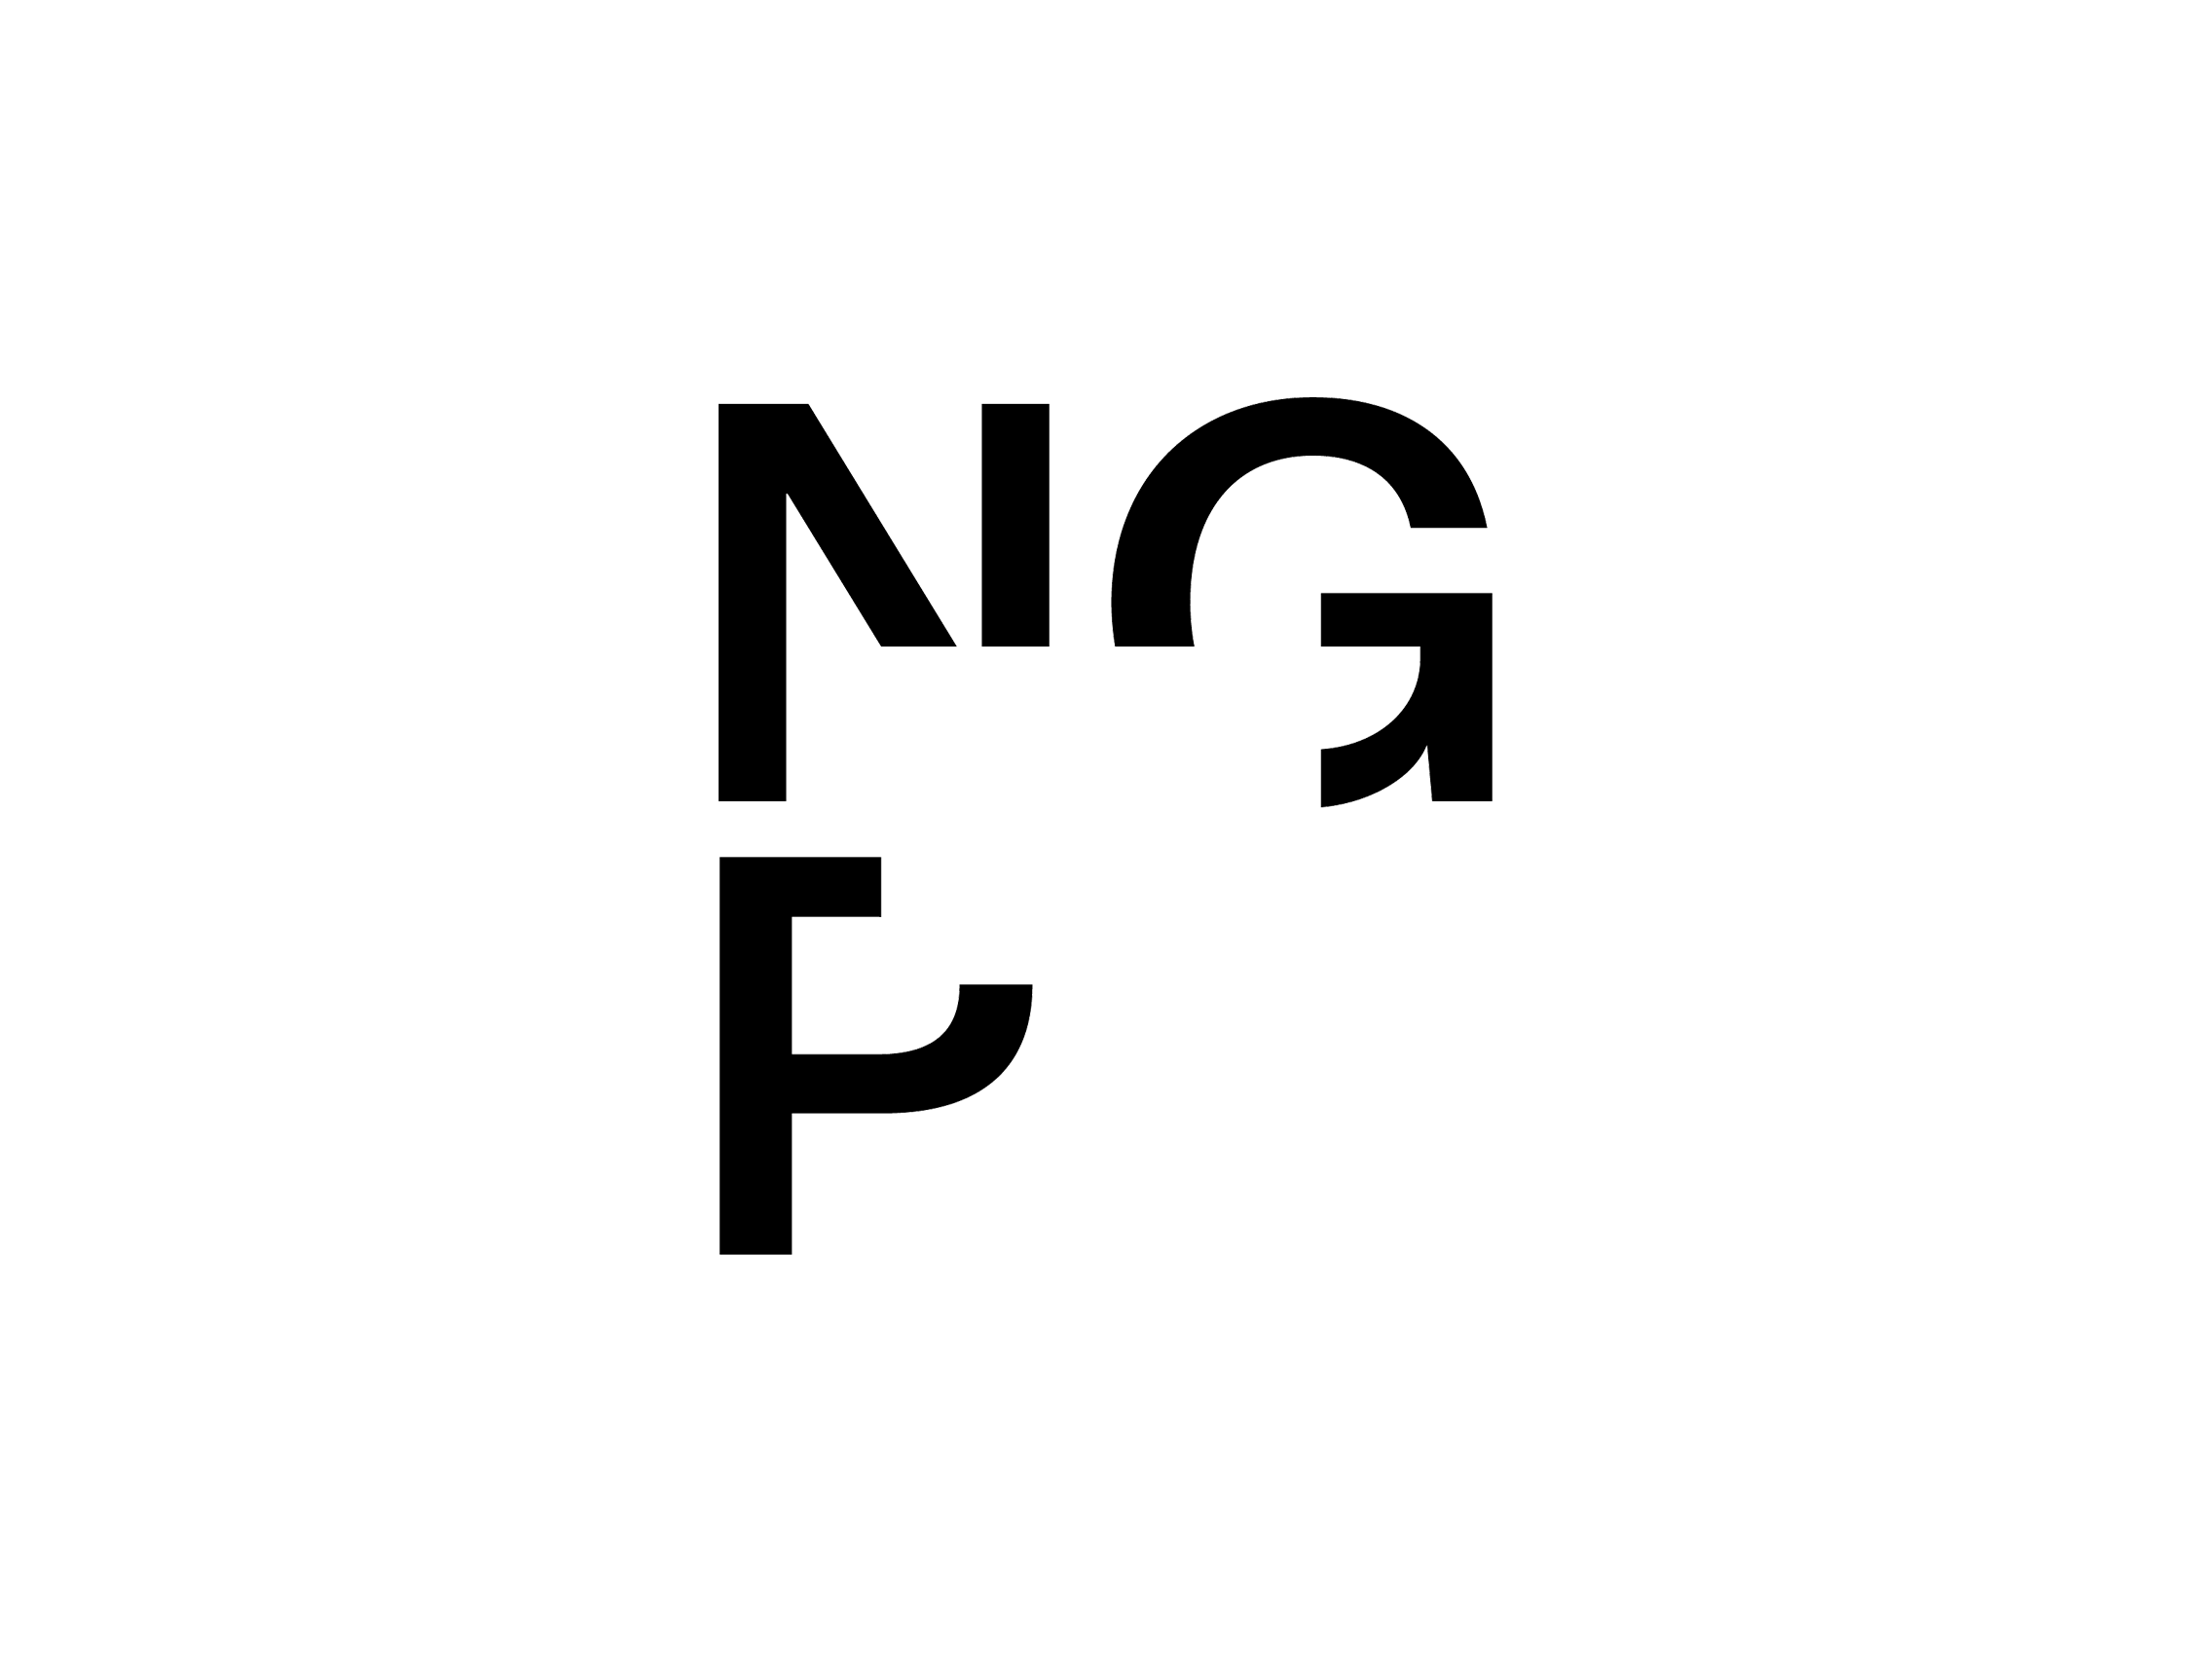 NGP Logo - NGP National Gallery Prague logo 2018 - Logok